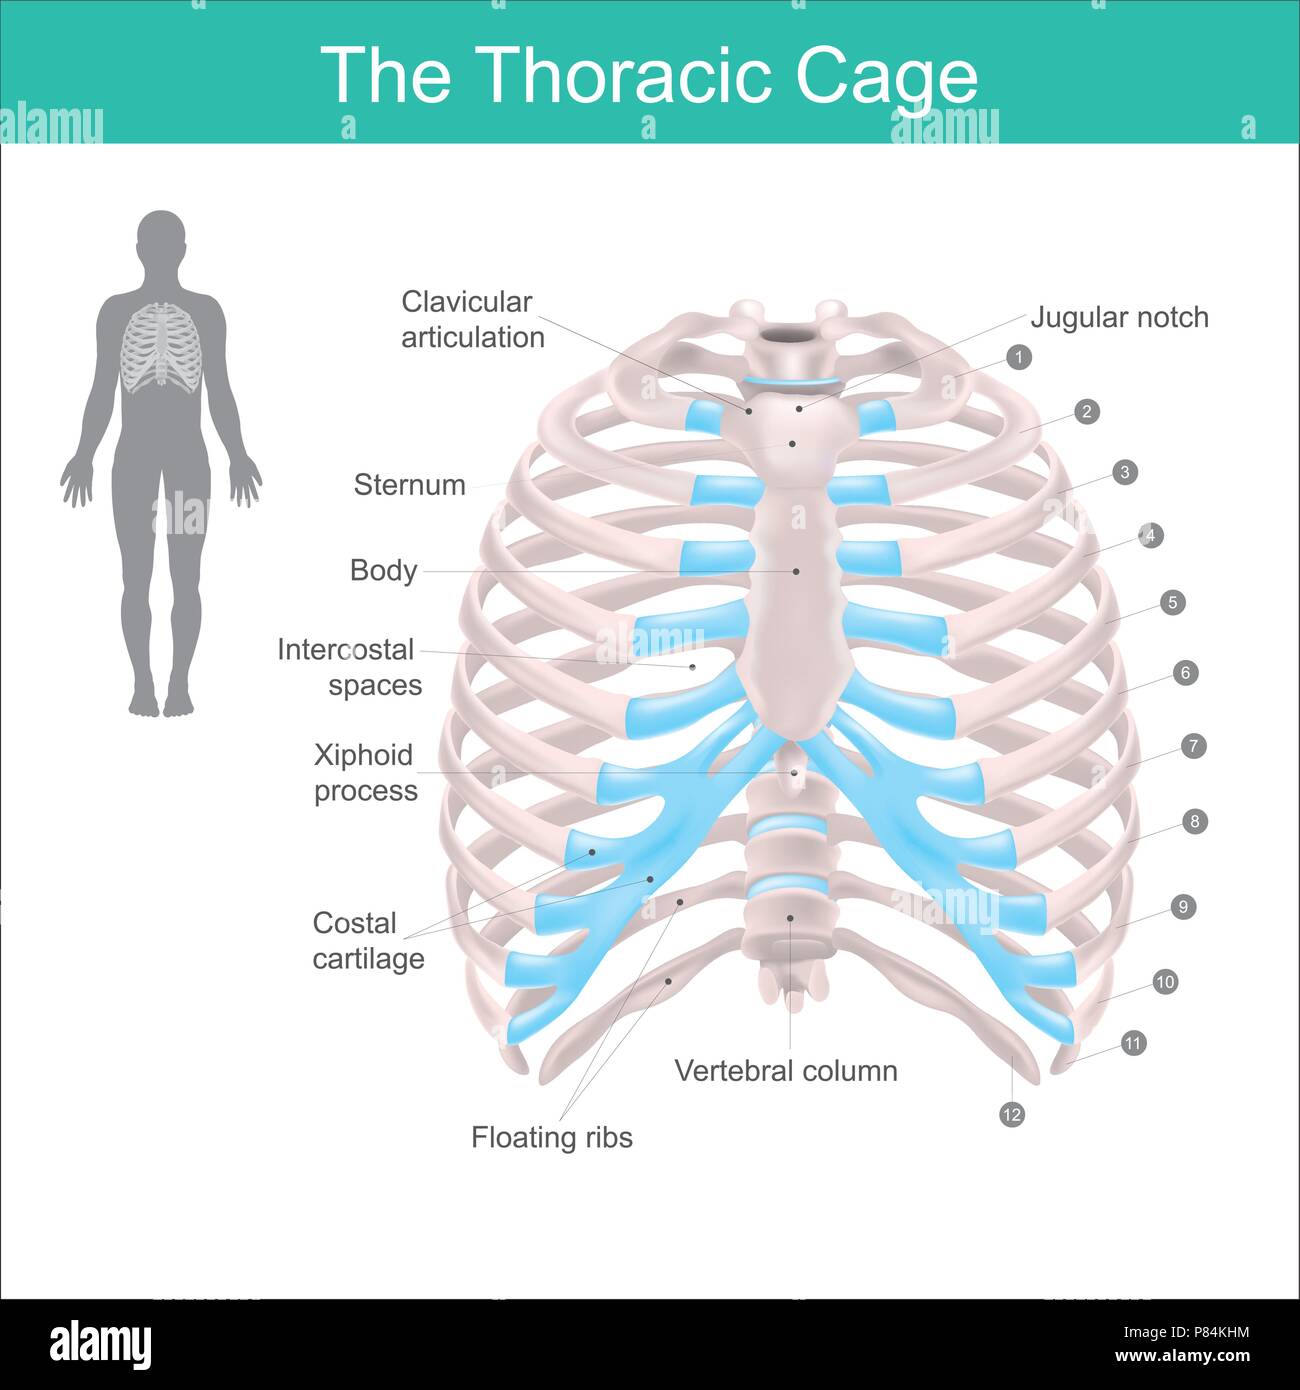 La gabbia toracica si compone di ossa e cartilagine lungo, si compone di dodici coppie di nervature con loro cartilagini costiera e lo sterno. Illustrazione Illustrazione Vettoriale